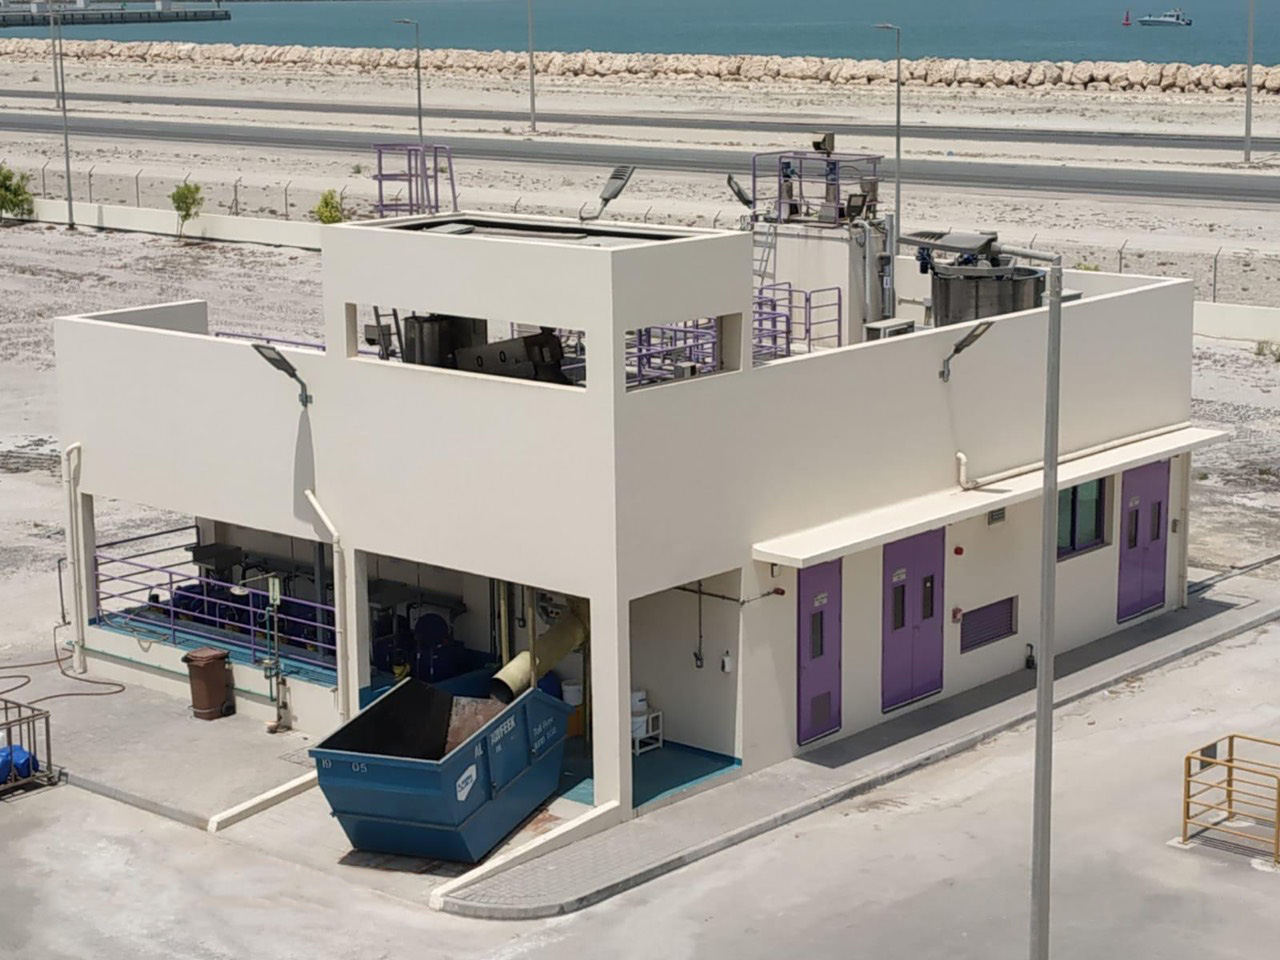 Nghiệm thu đưa vào sử dụng – Hệ thống xử lý nước thải Nhà máy Biscuit MFG tại Bahrain